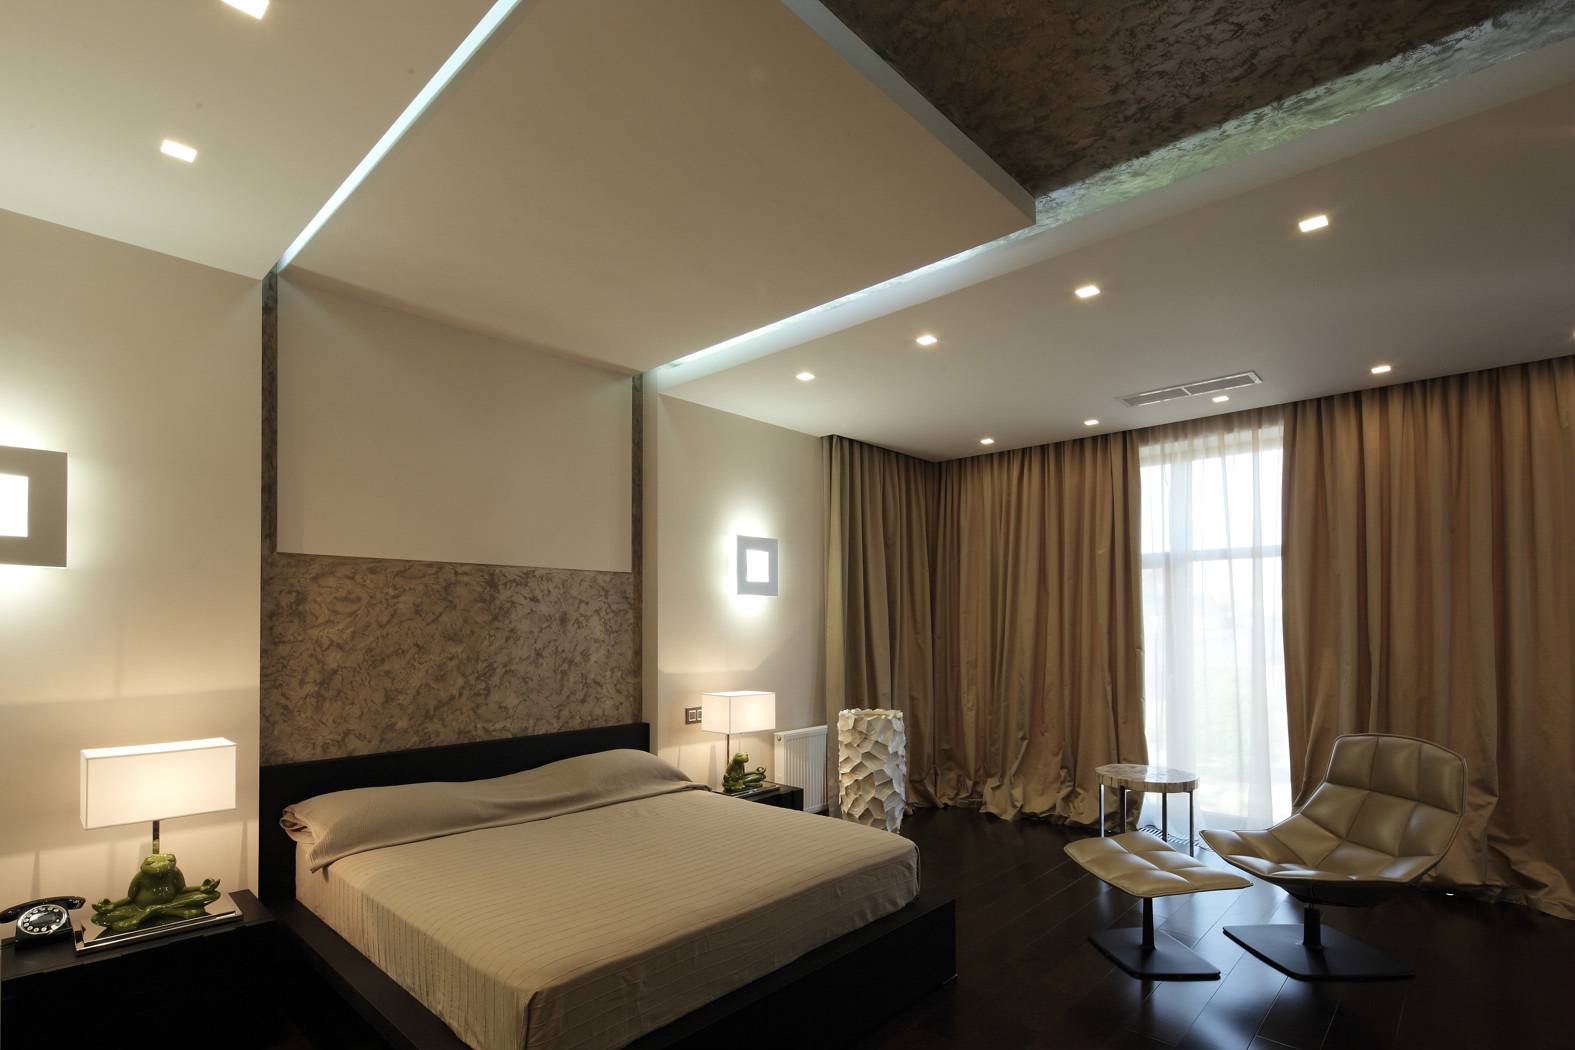 Потолки из гипсокартона - фото для спальни: дизайн с подсветкой над кроватью